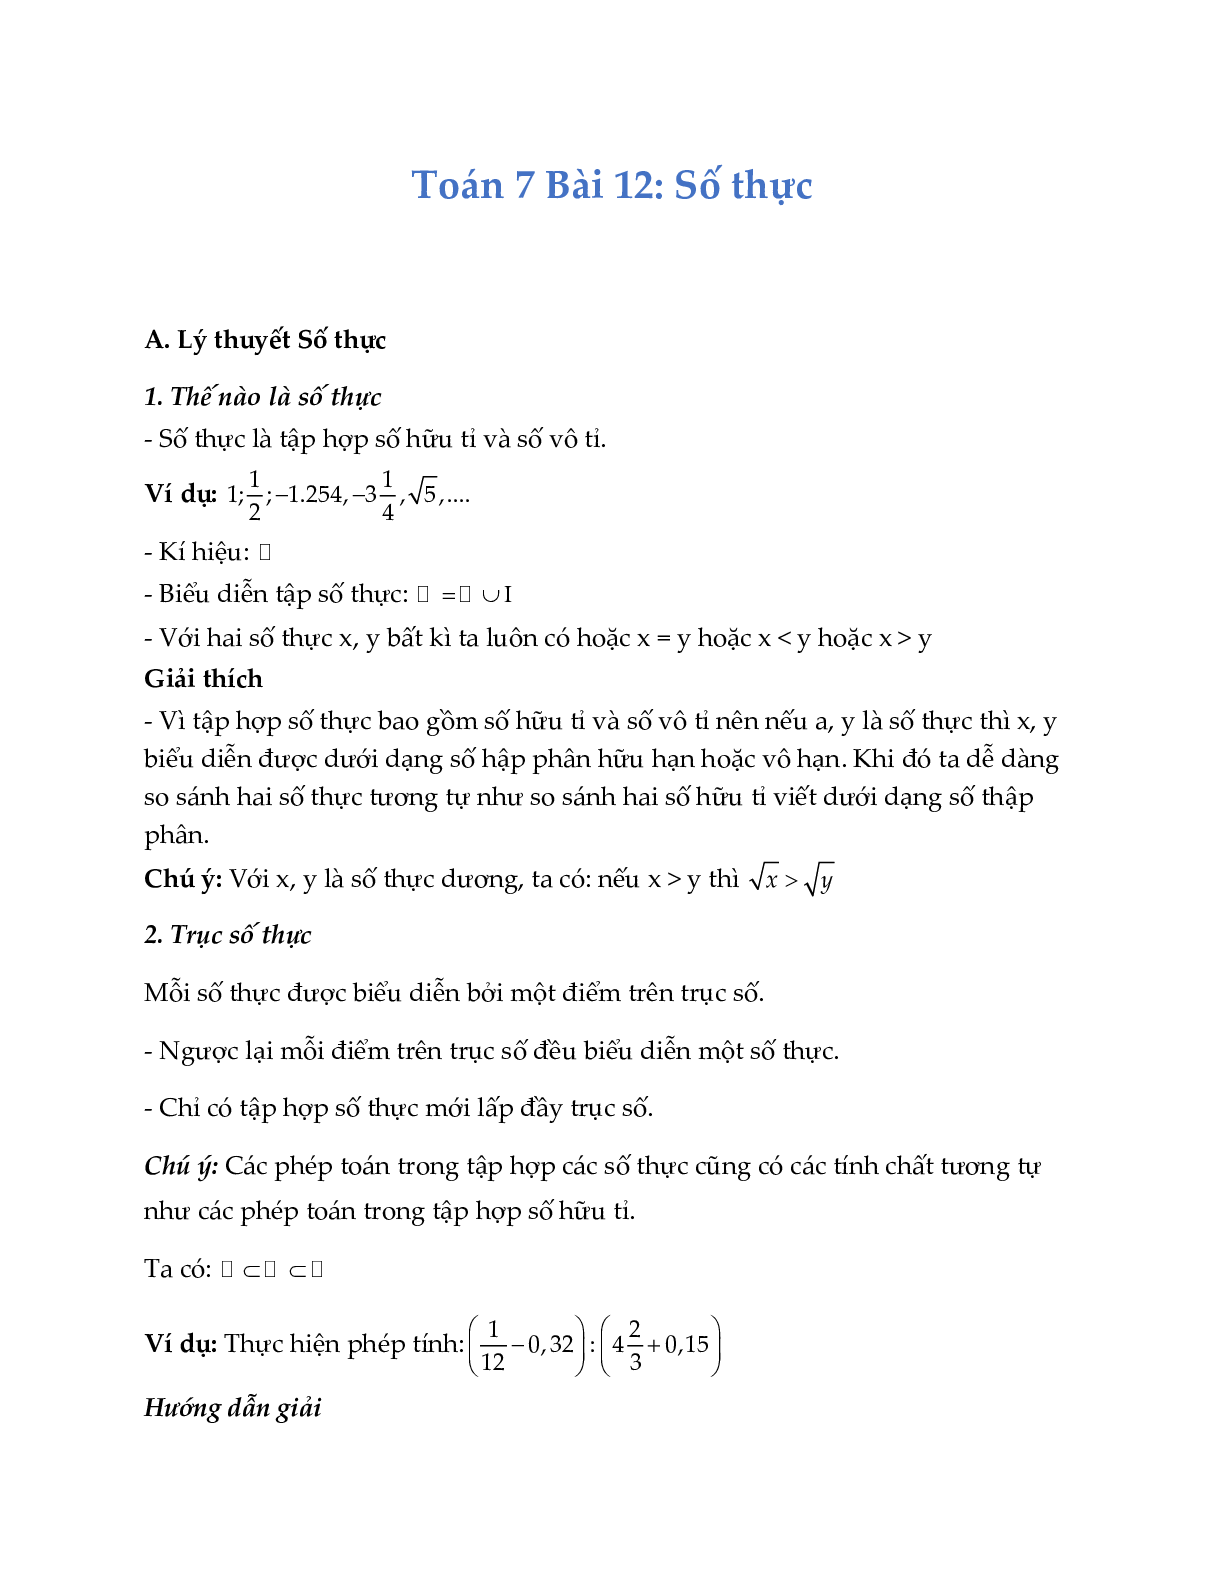 Lý thuyết Toán lớp 7 Bài 12: Số thực (trang 1)